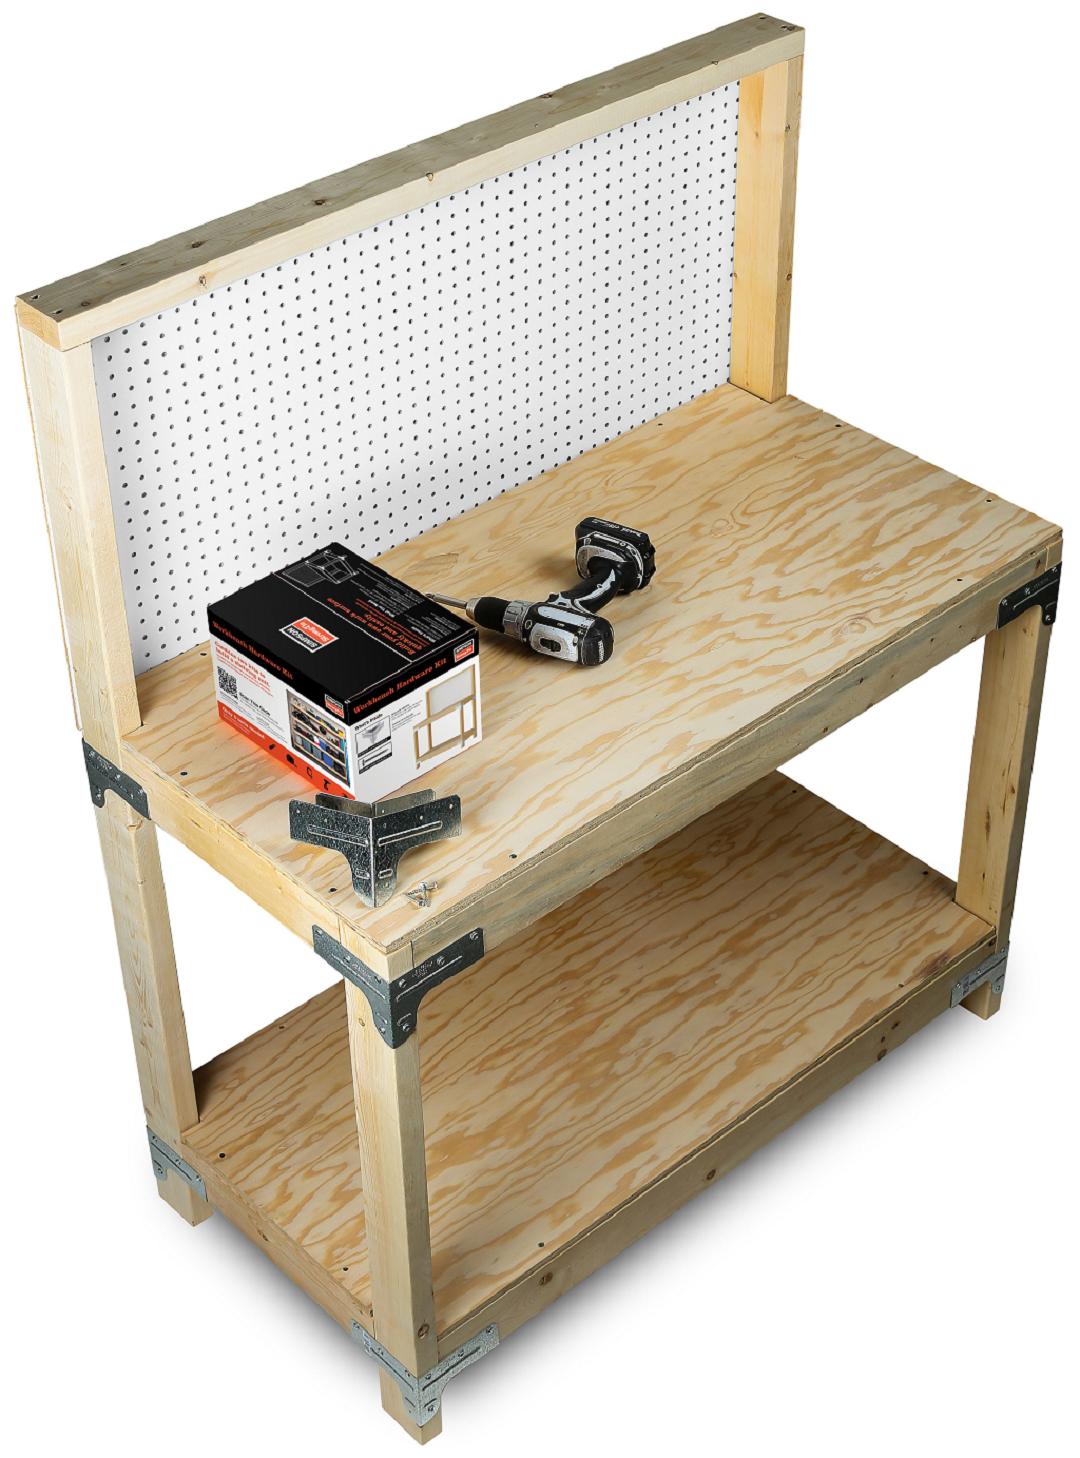 WBSK Workbench or Shelving Kit Built